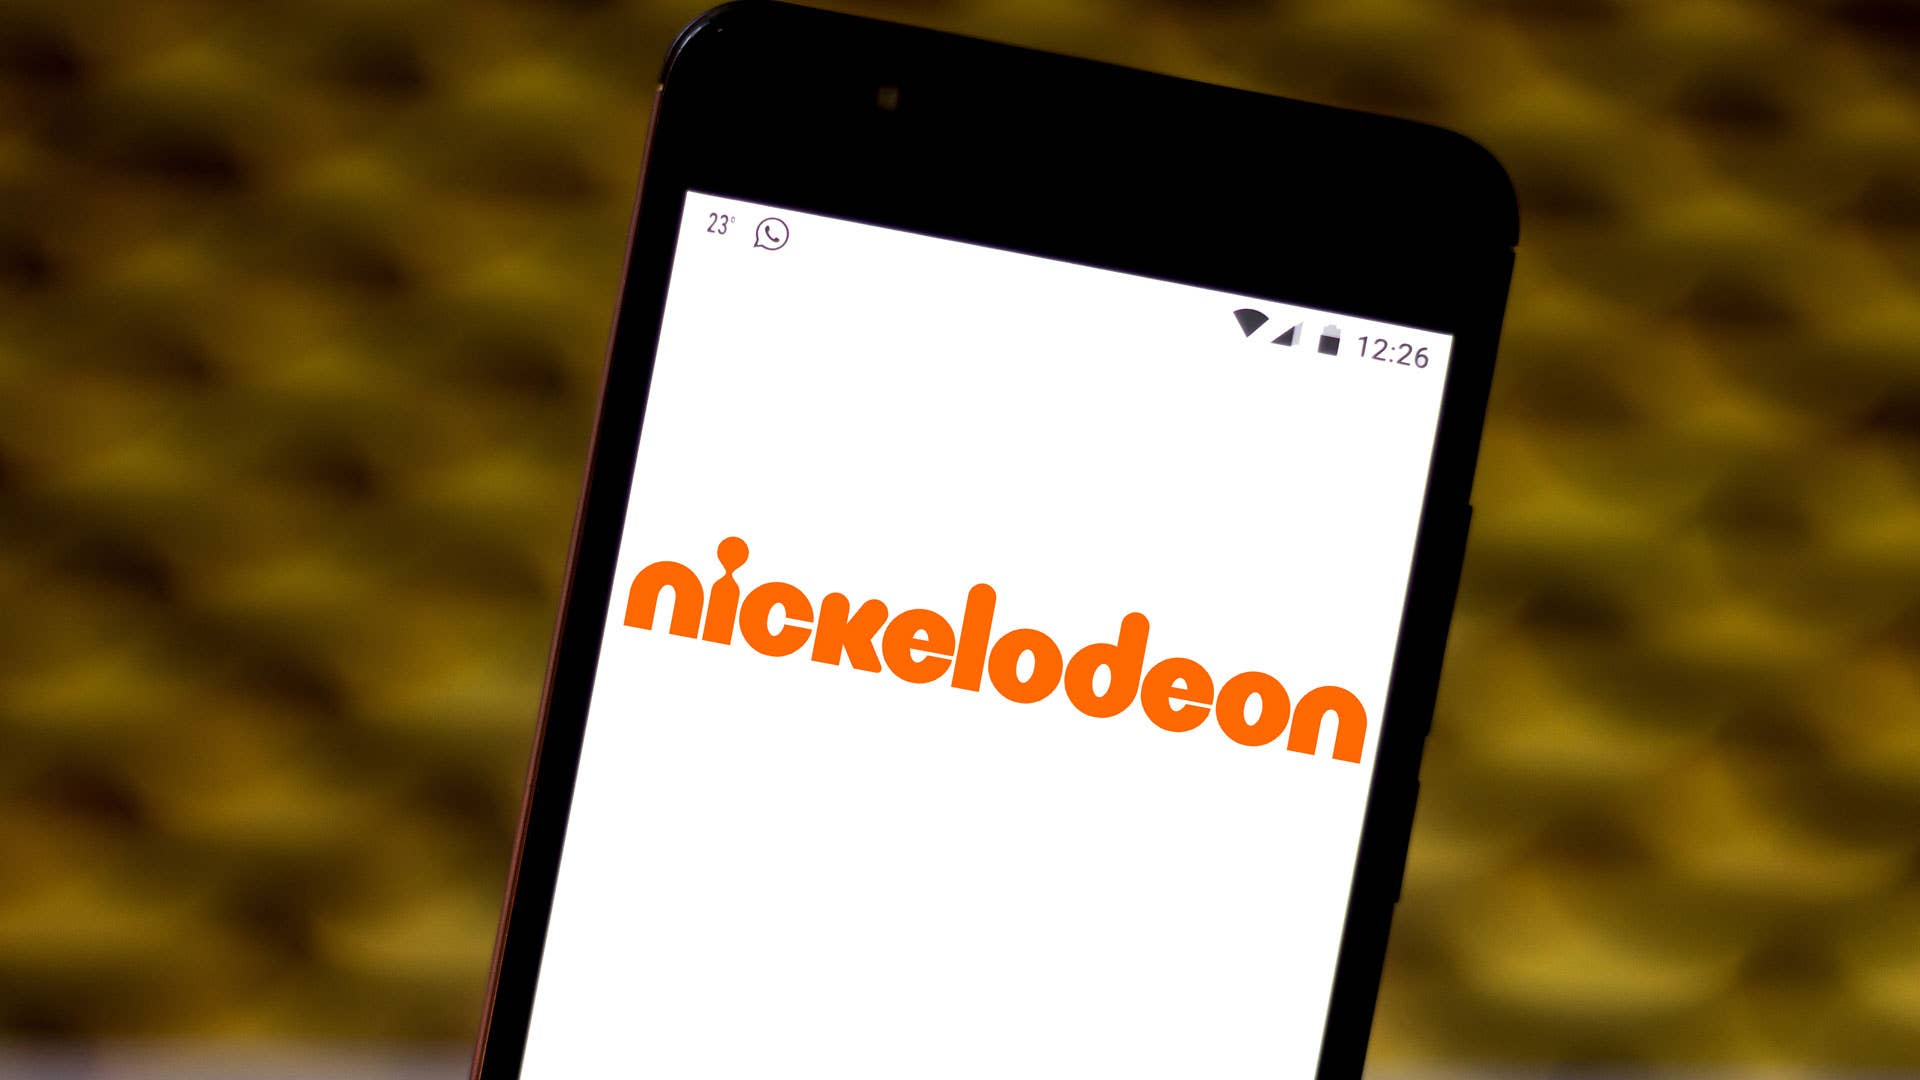 Nickelodeon phone